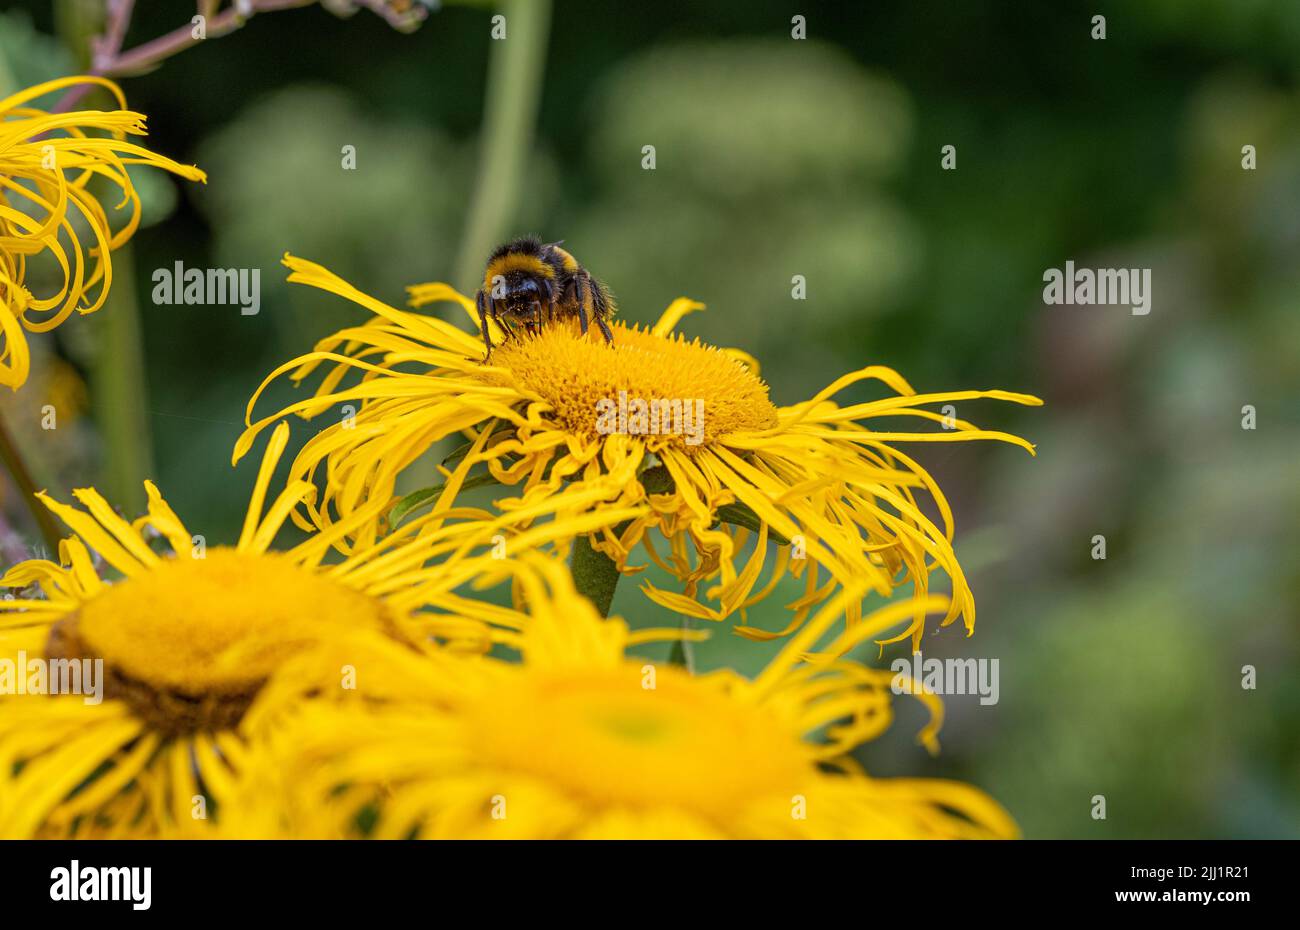 Abeja que poliniza las flores amarillas y chicharrones de Inula magnifica que crecen en un jardín británico. Foto de stock